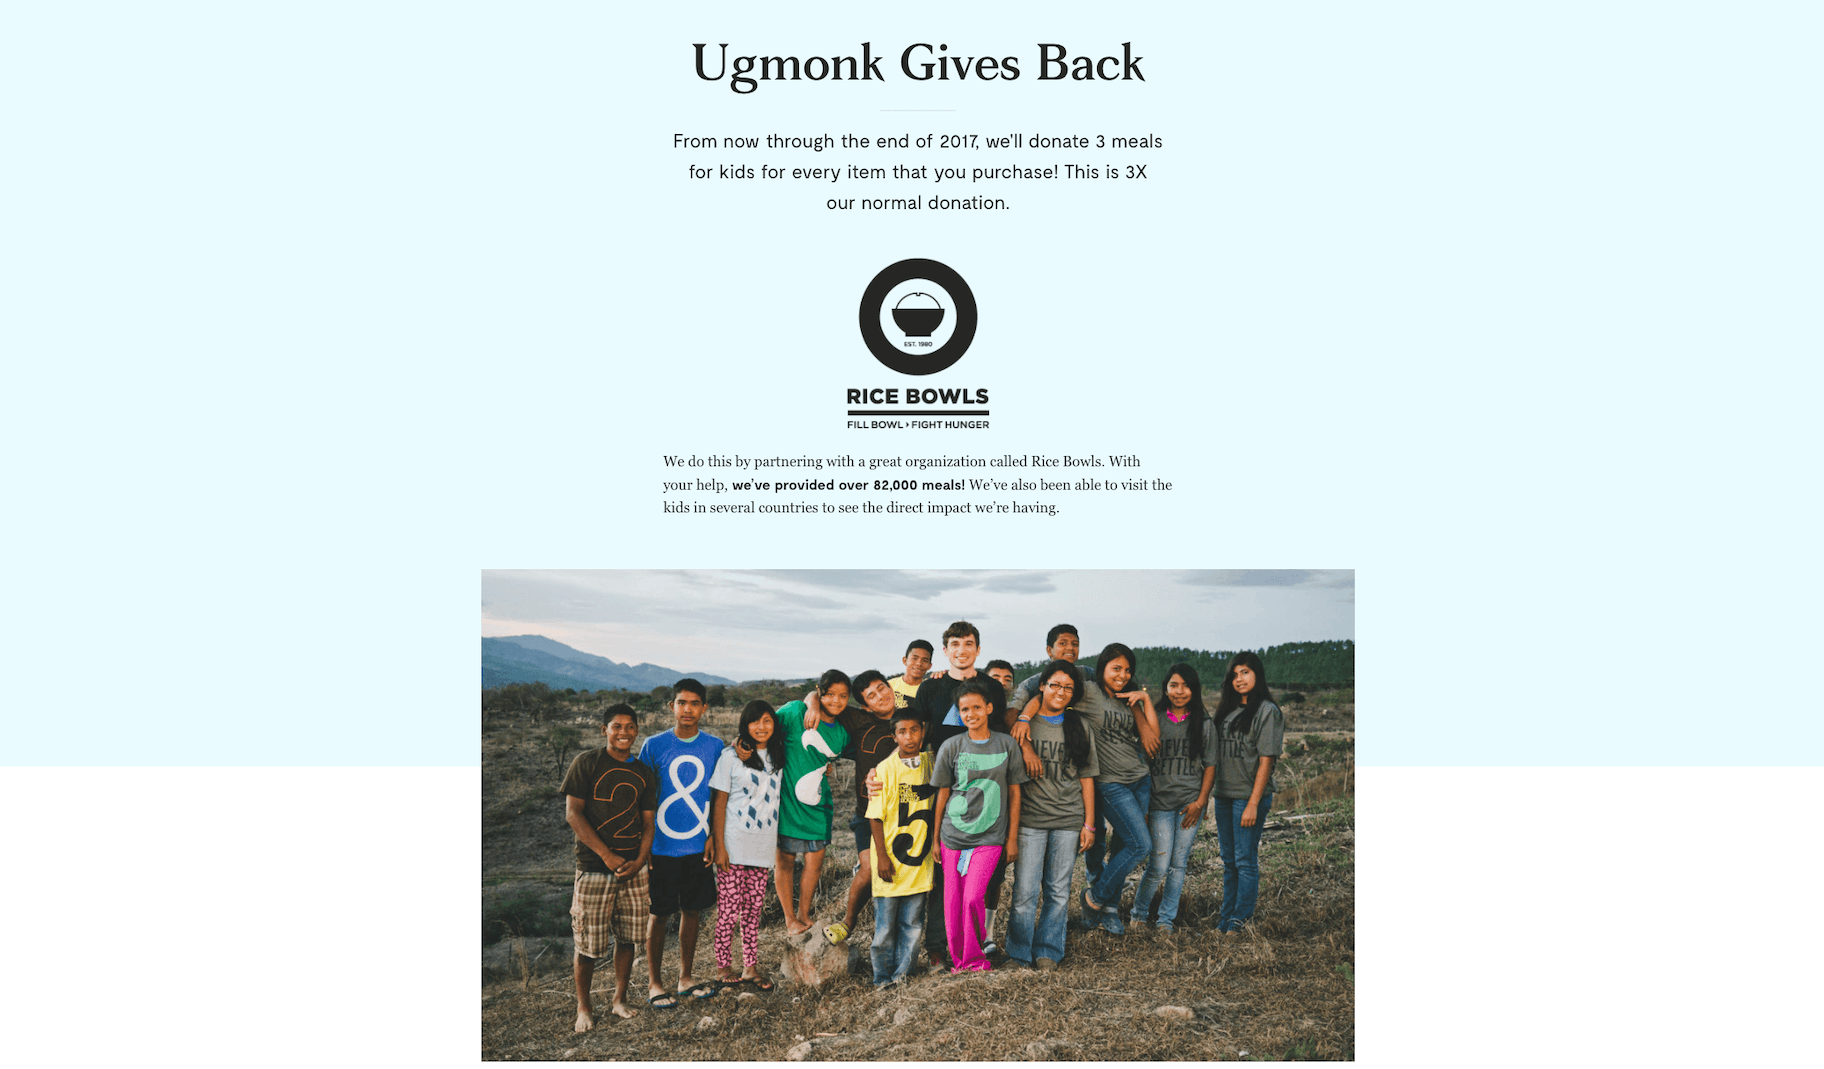 Ugmonk与“饭碗”的慈善工作